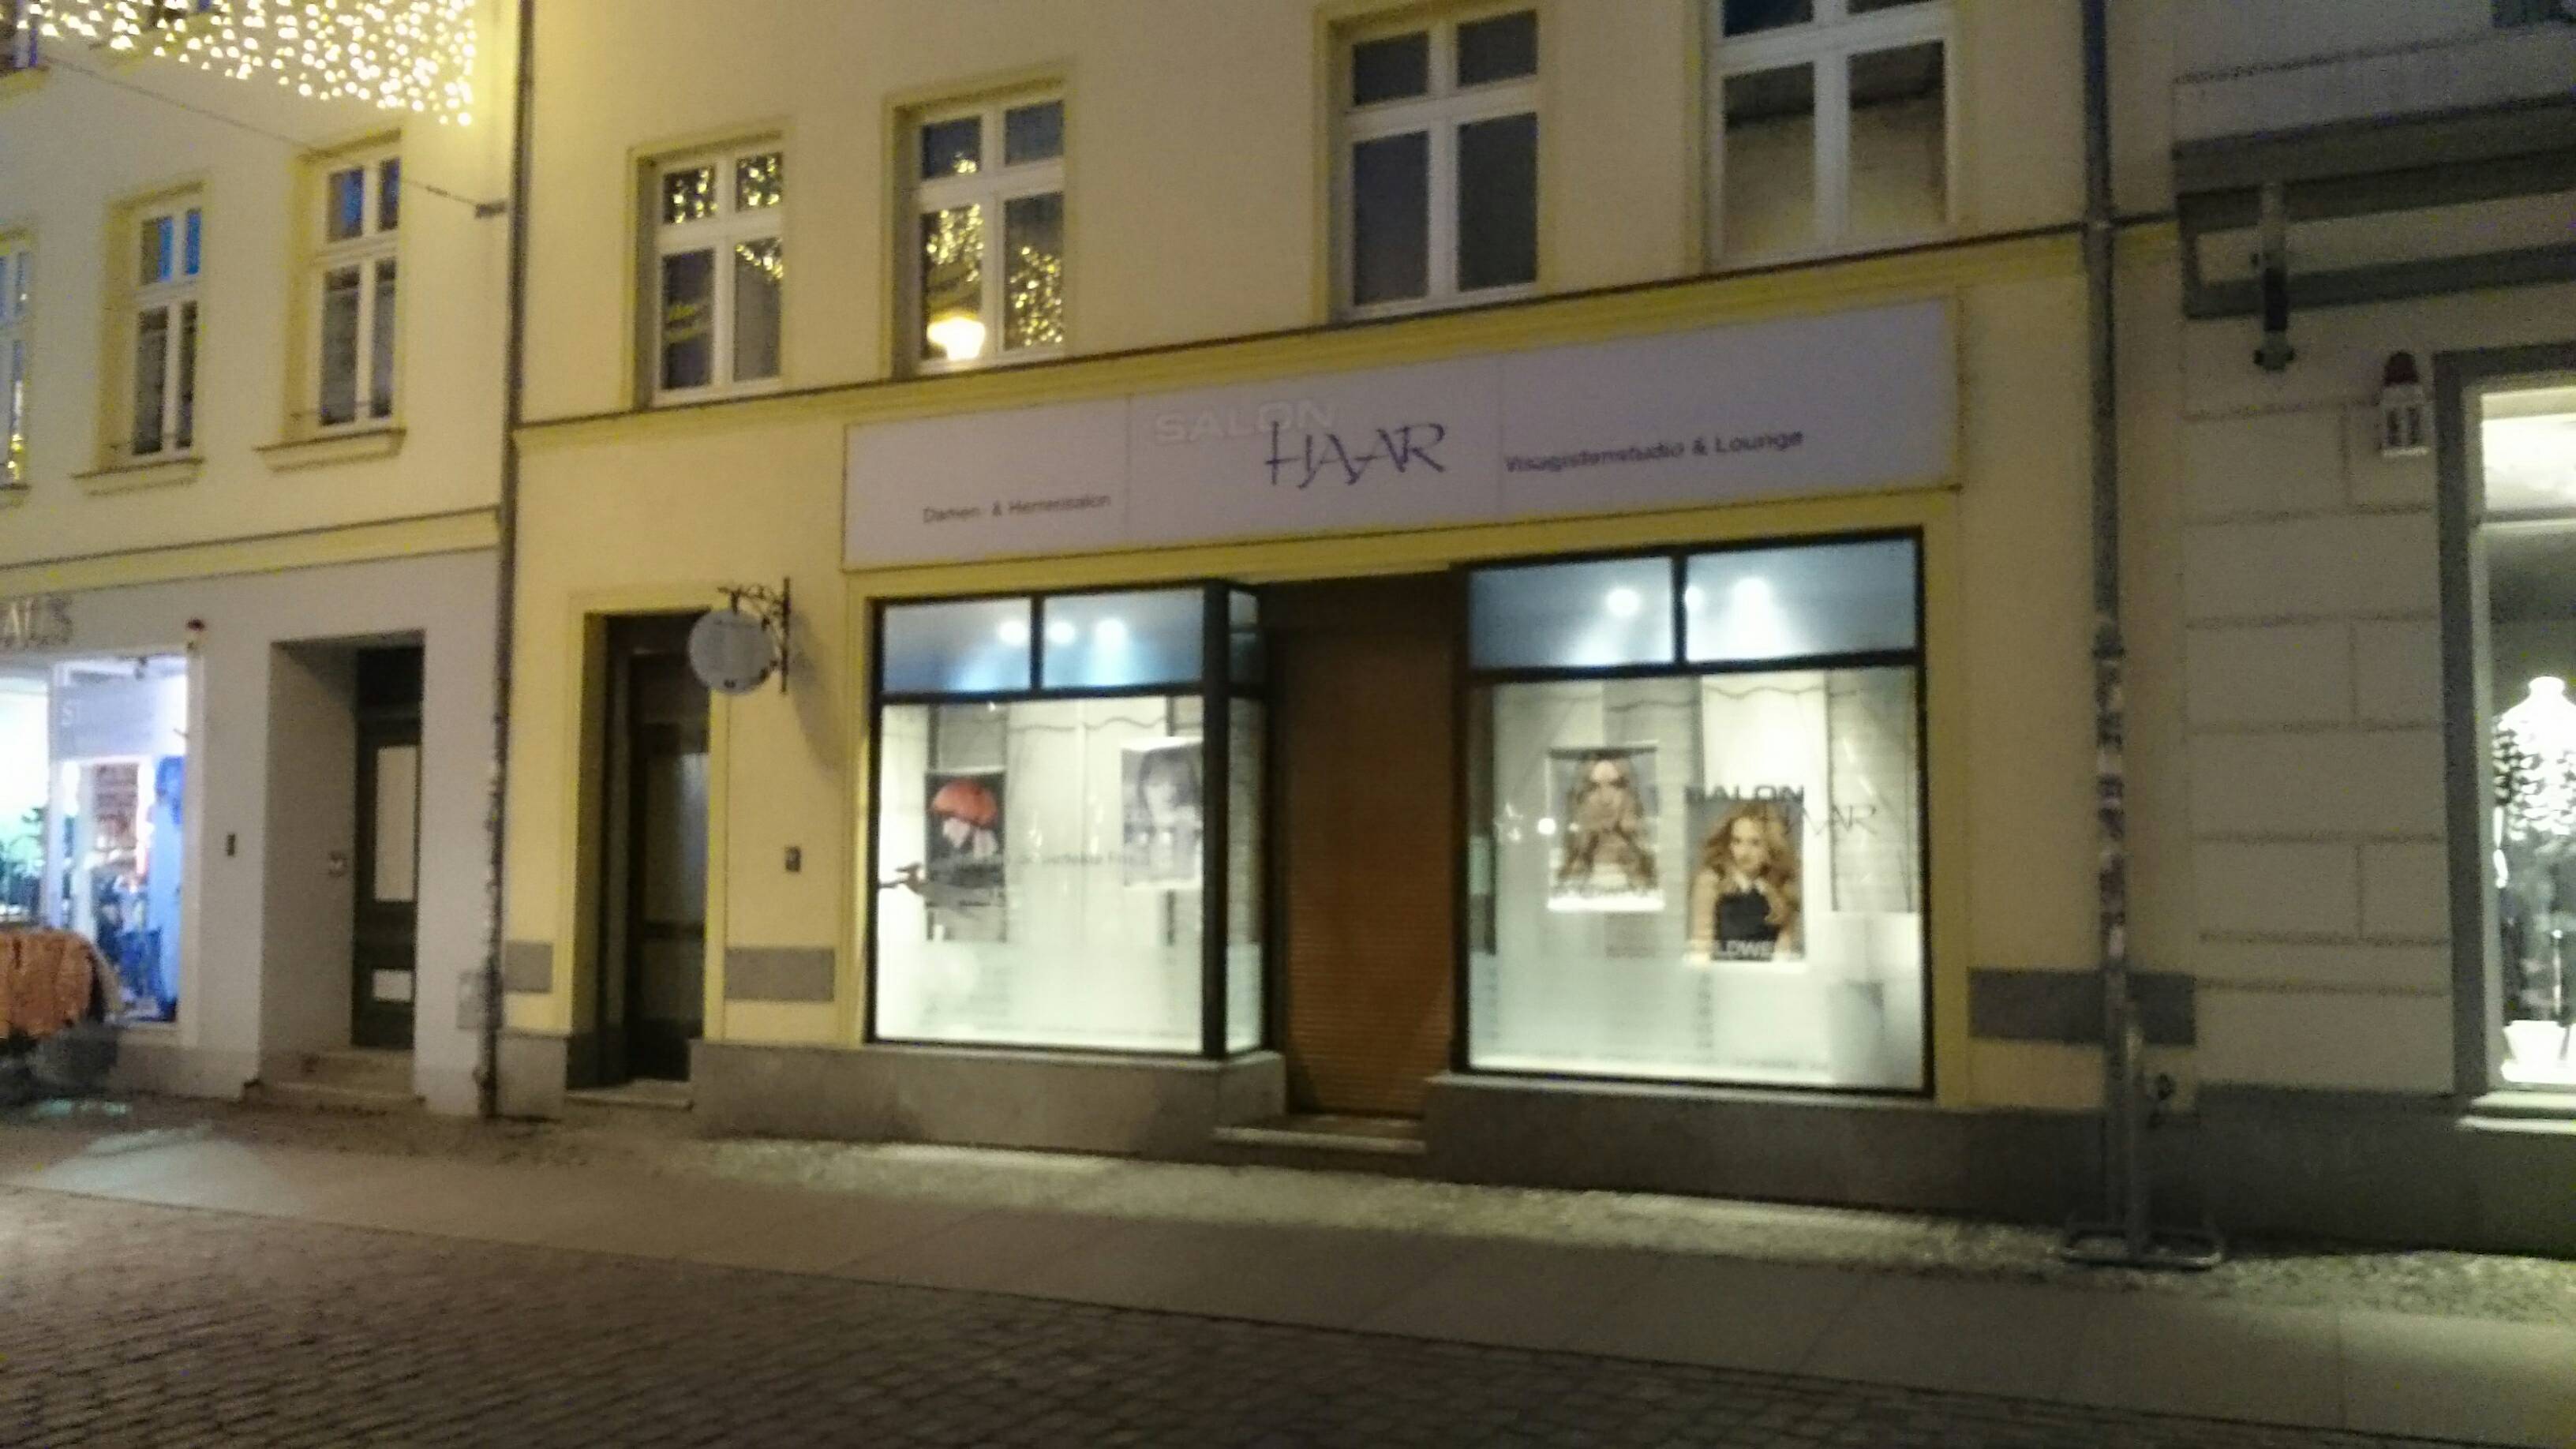 Bild 1 Salon Haar in Stralsund